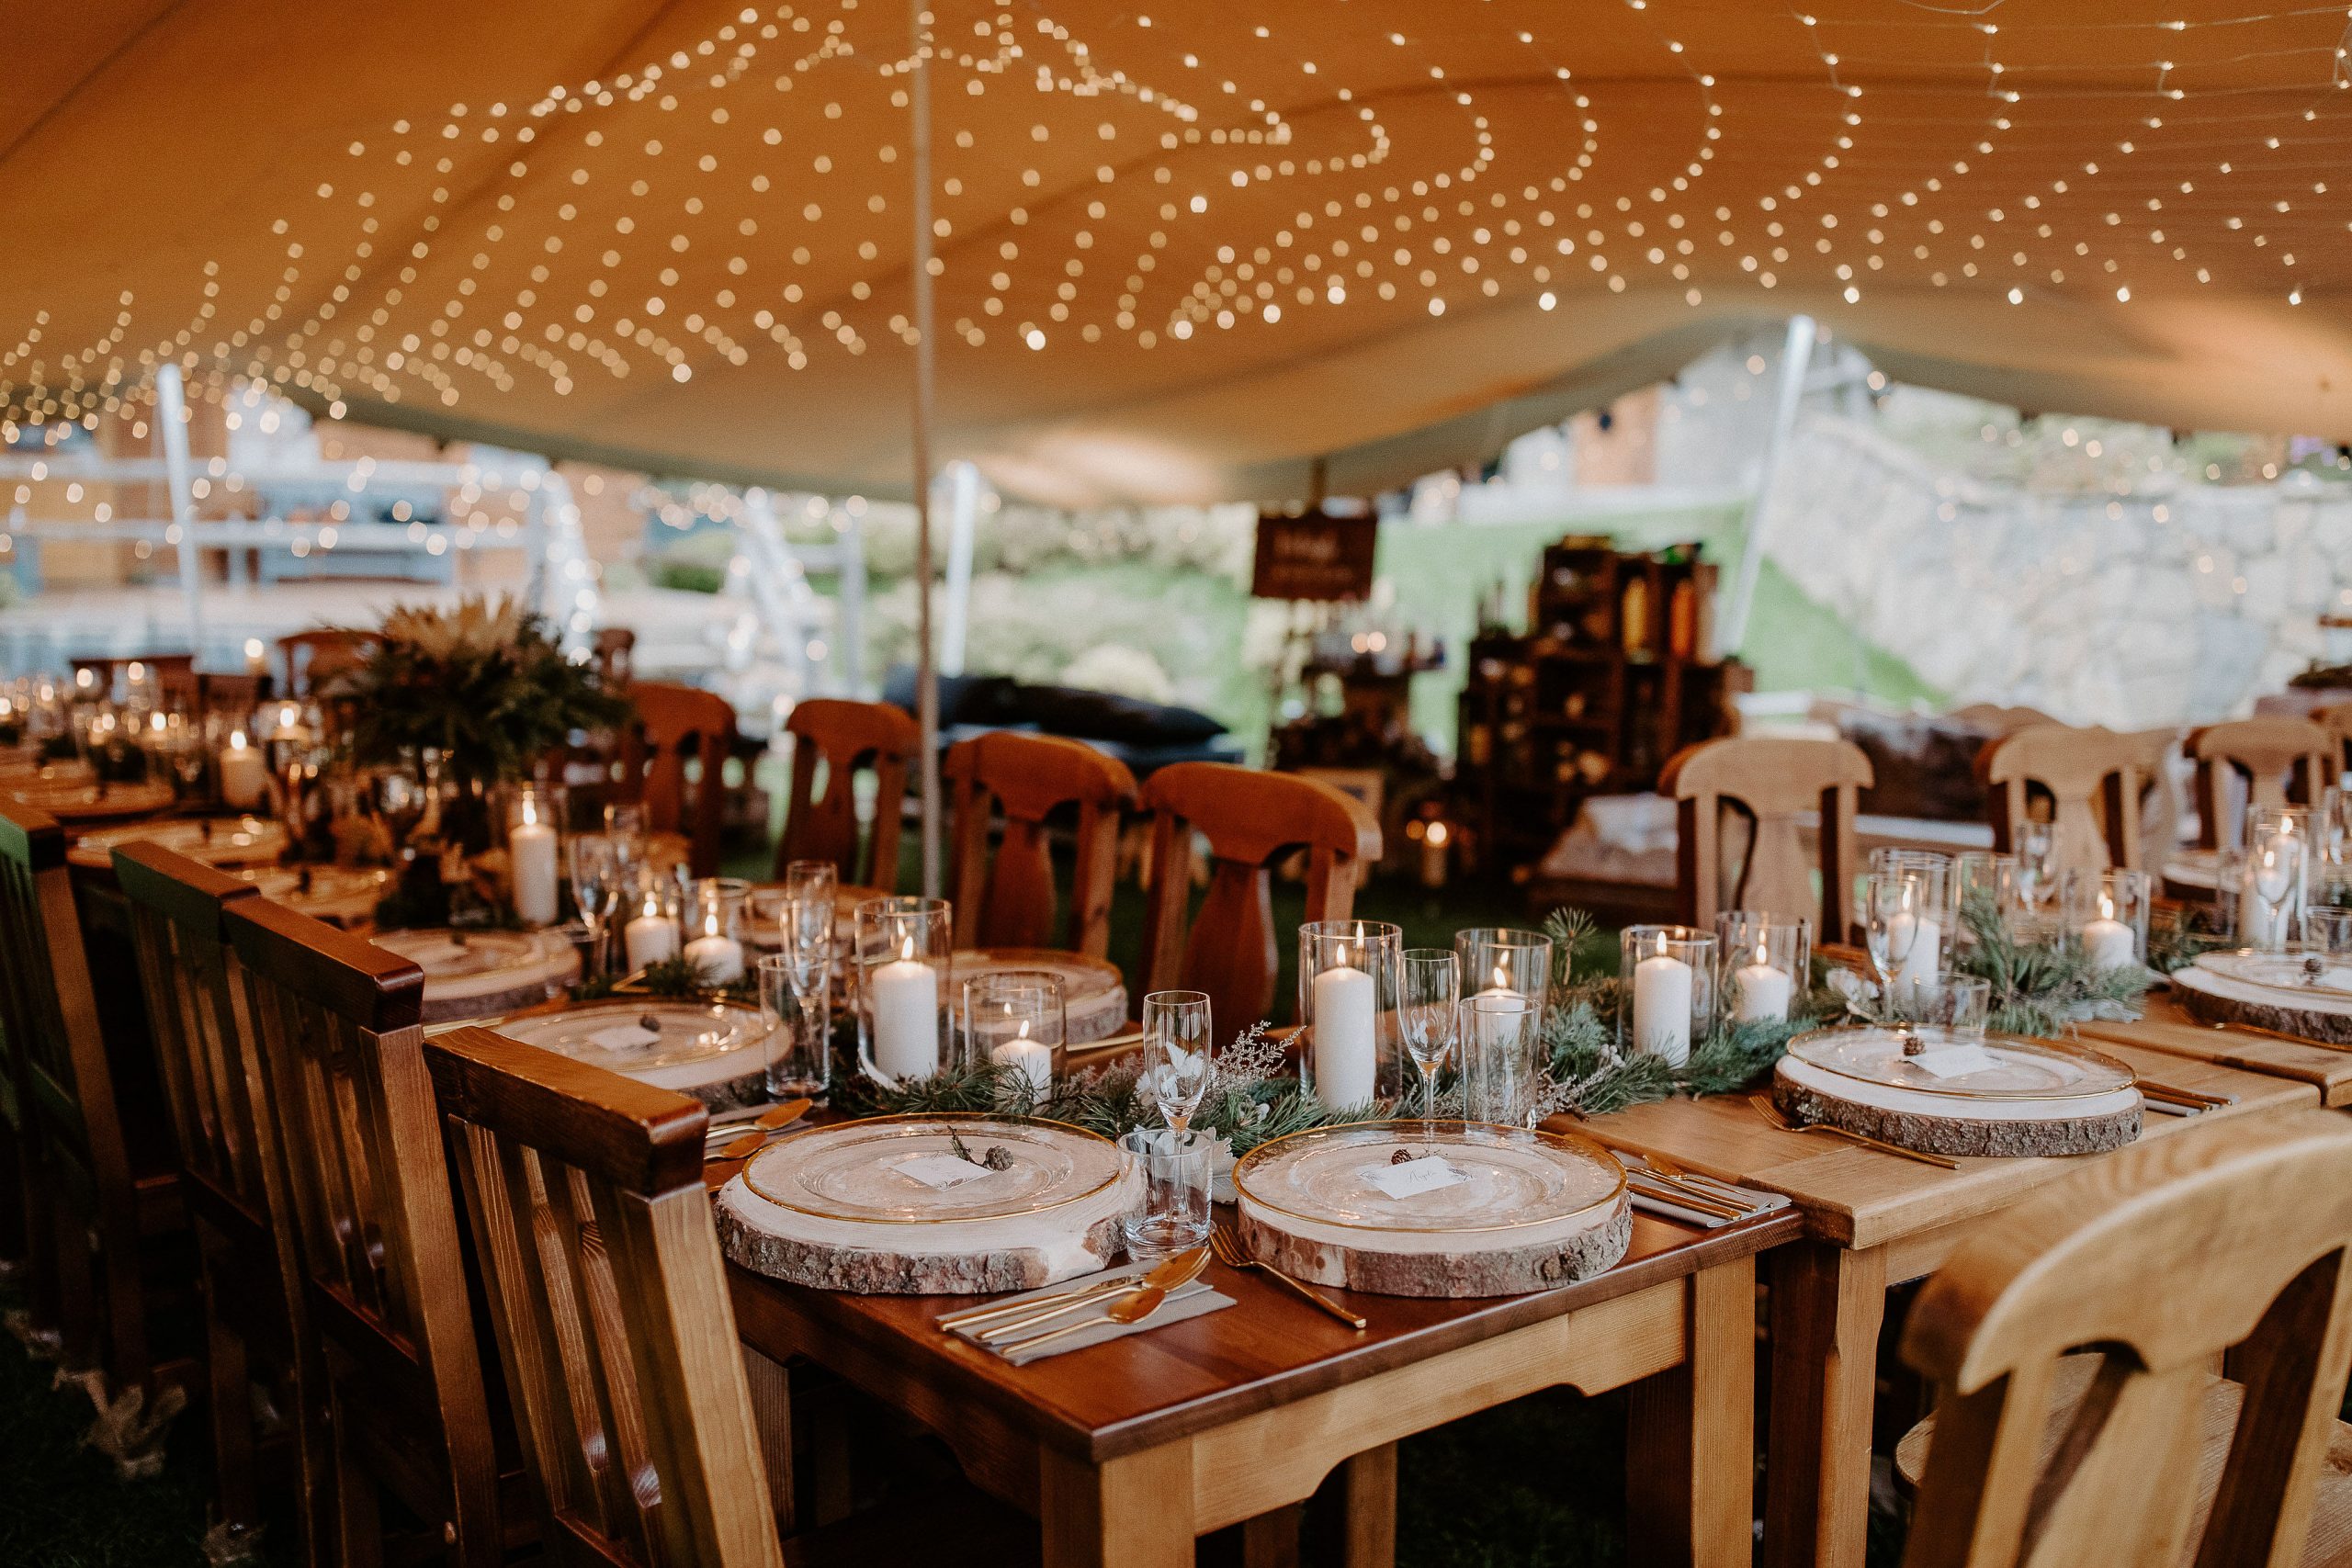 Susan&Sis decor – rozpravkova lesna svadba – blog o prirodnej svadbe – svadba MEMO photo agency – Eri a Matt – nahe prestieranie stola, ihlicie a sisky, svetelny strop